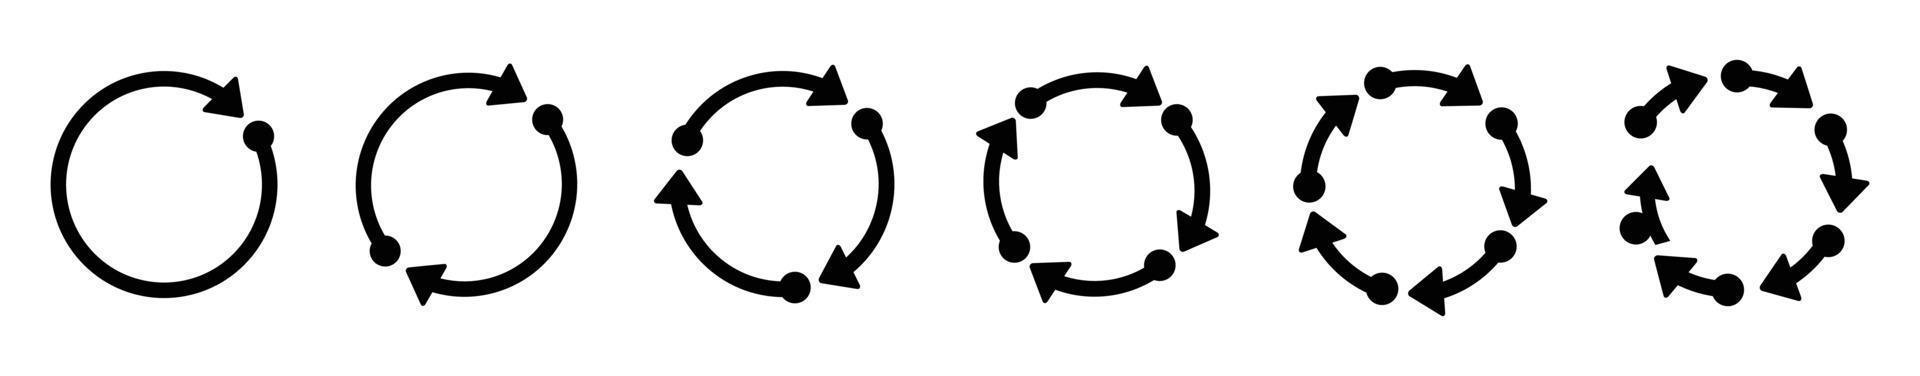 Kreispfeile-Icon-Set. Vektorgrafik rundes Neuladezeichen, Liniensymbolsatz Symbol wiederholen, Pfeilsymbol flach drehen vektor